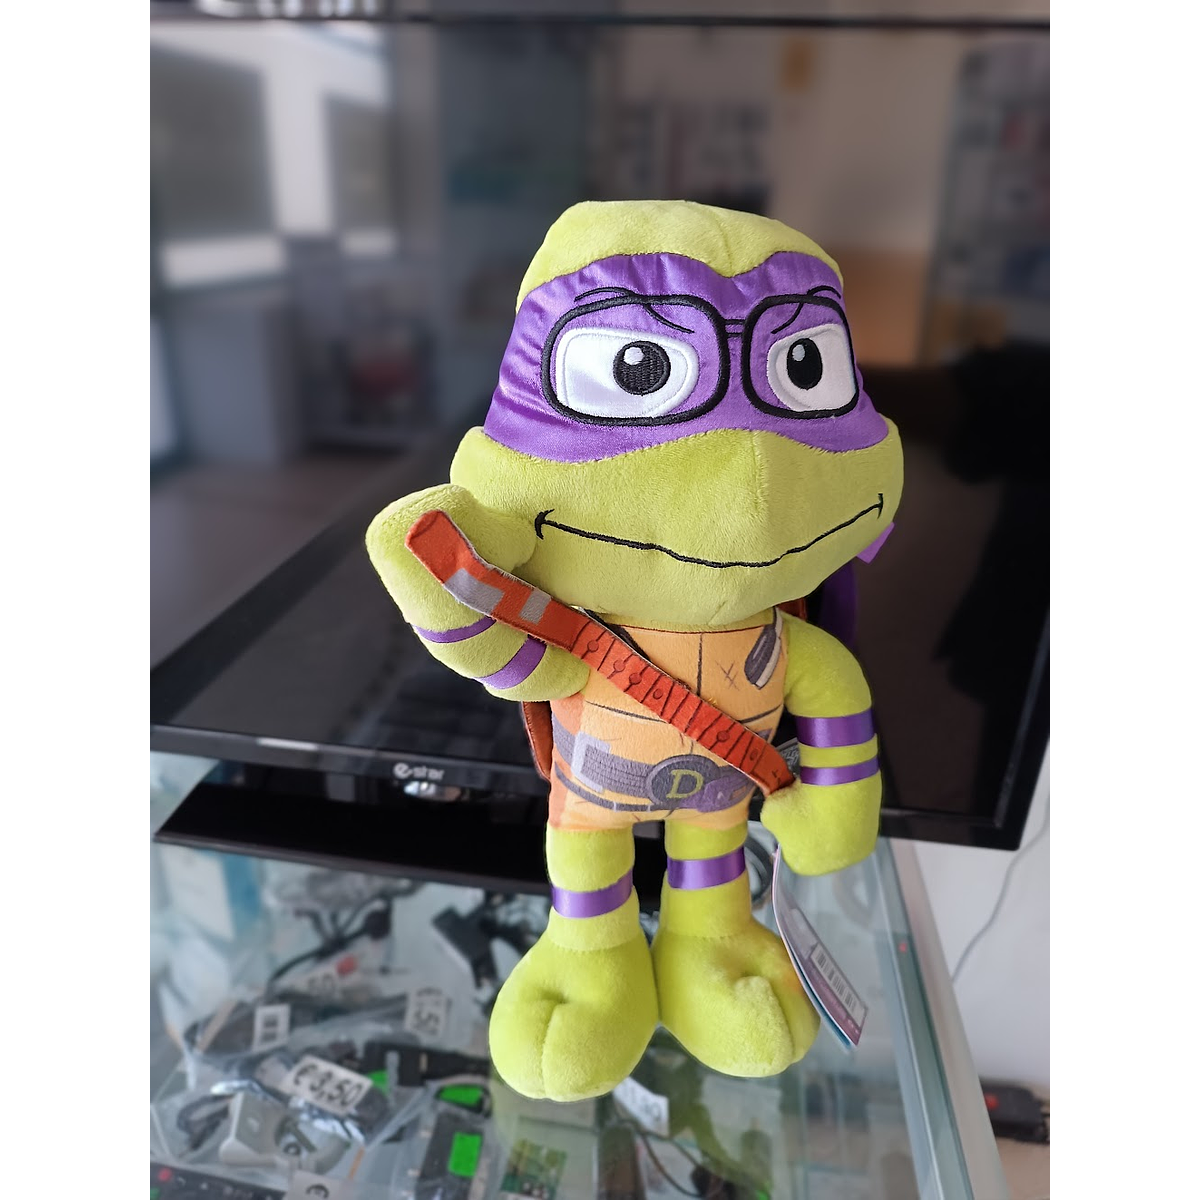 Tartarugas Ninja - Donatello 30 cm